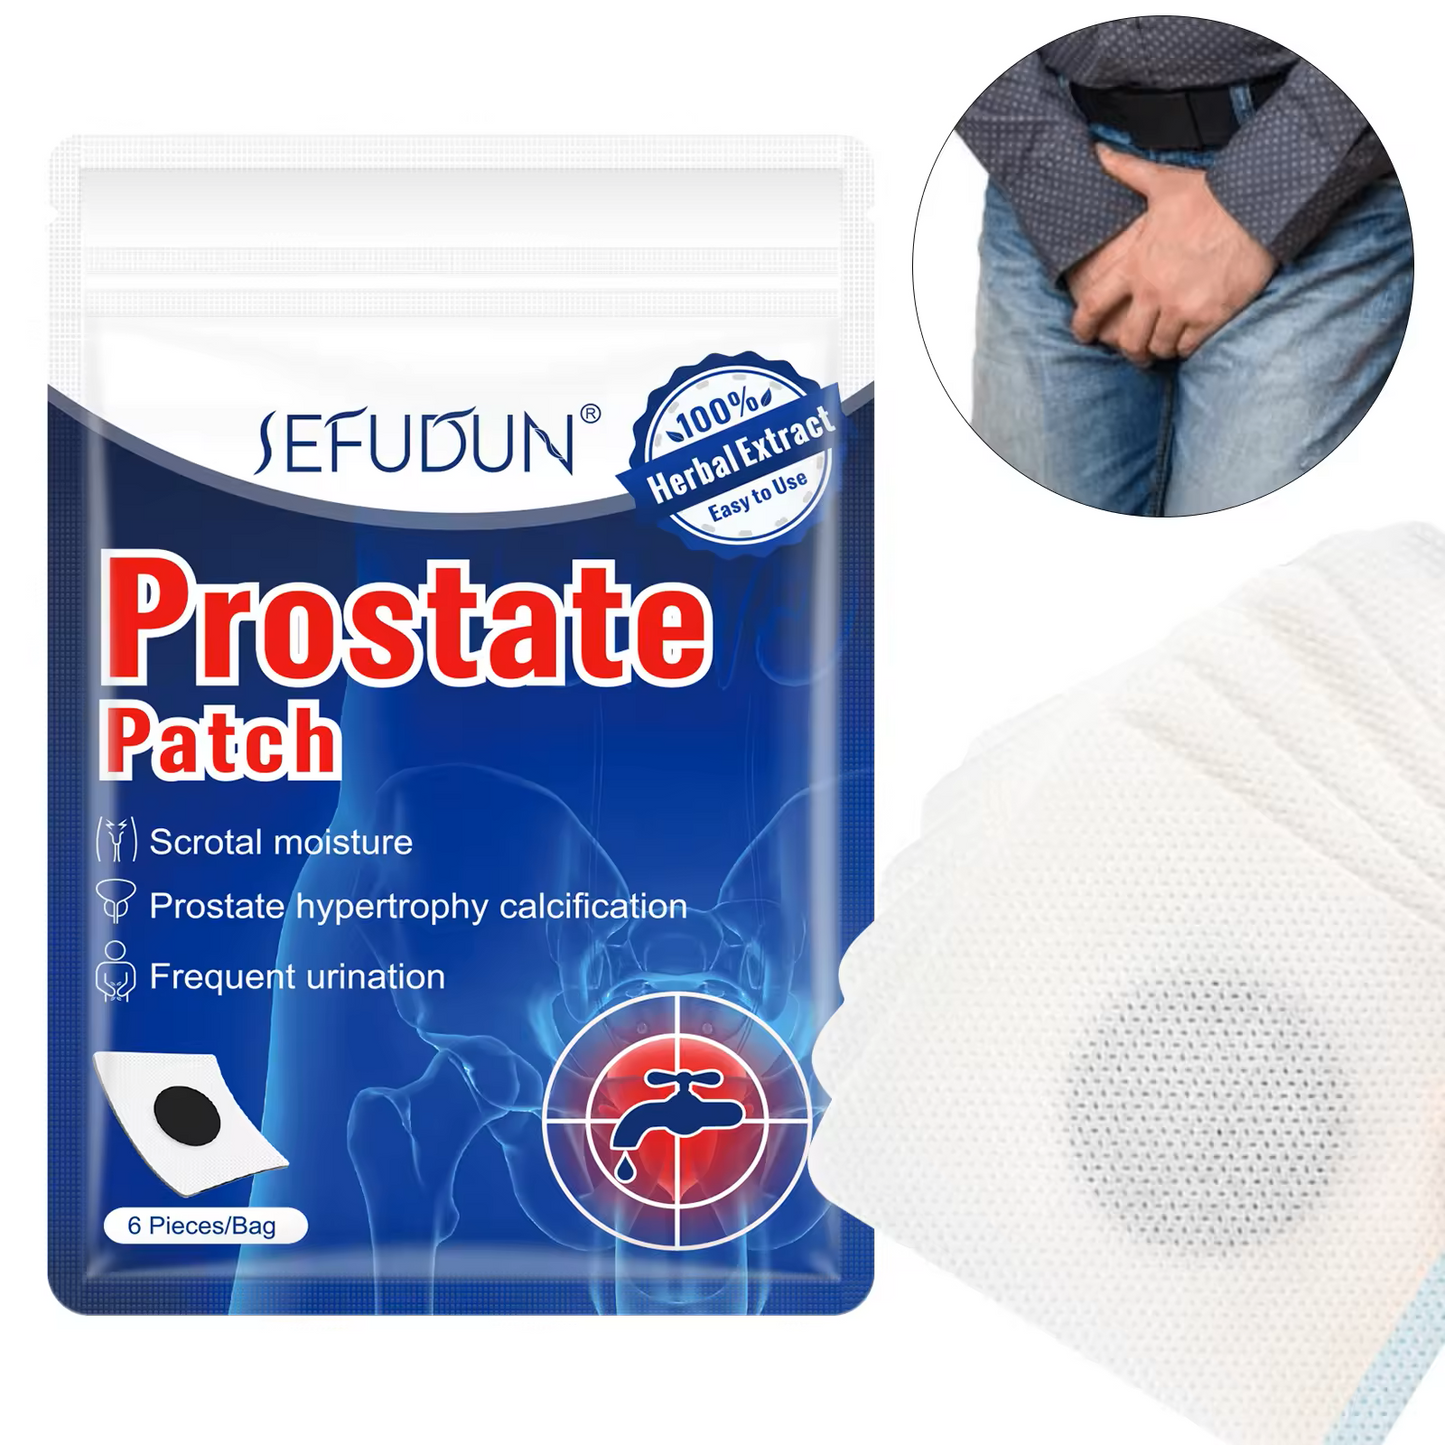 Prostate Patch